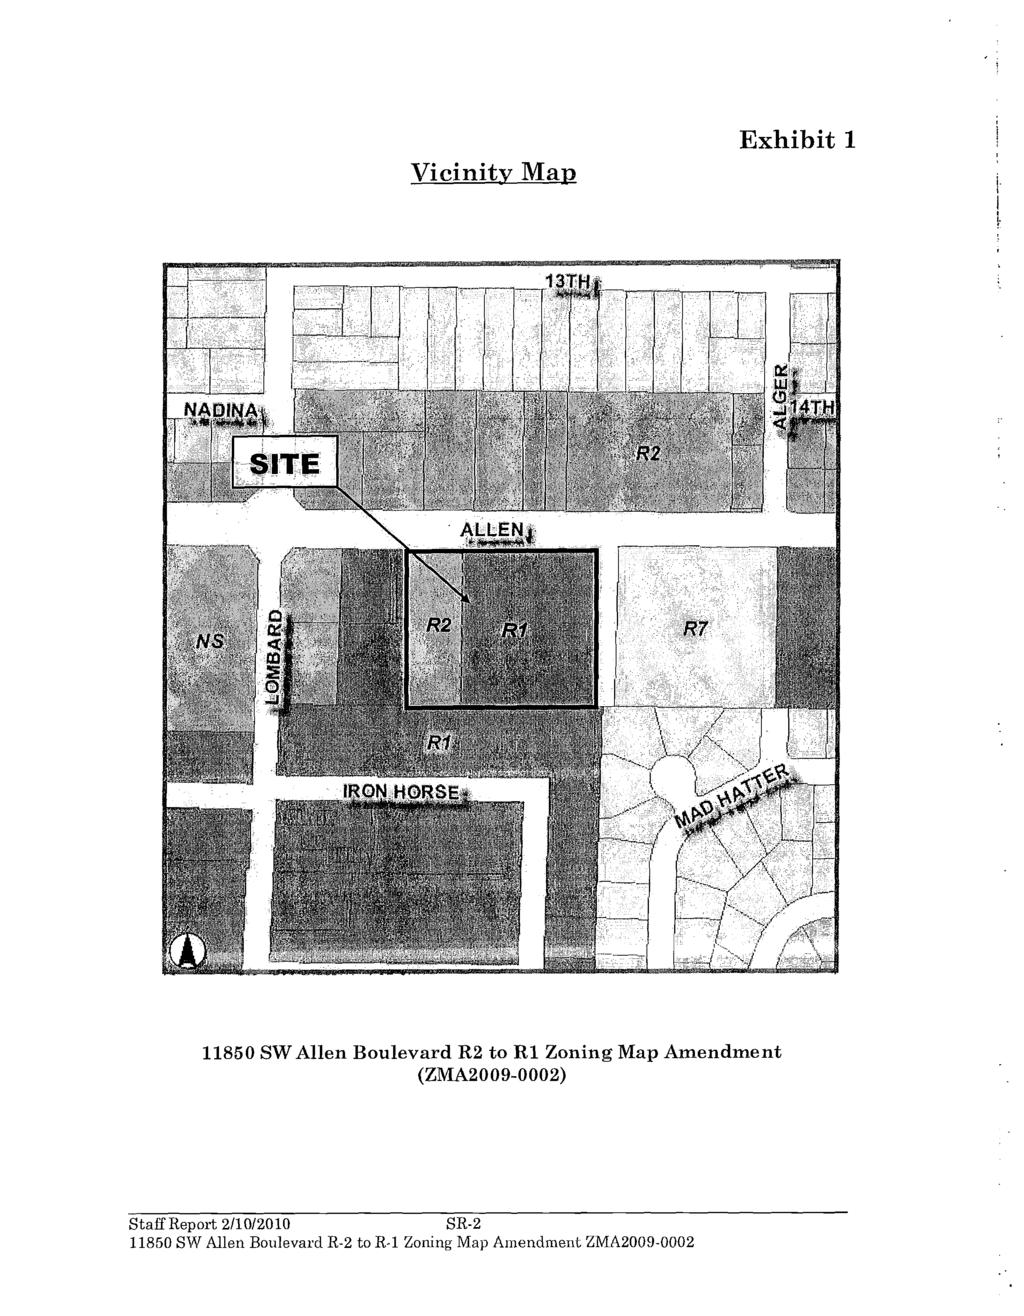 Vicinity Map Exhibit 1 11850 SW Allen Boulevard